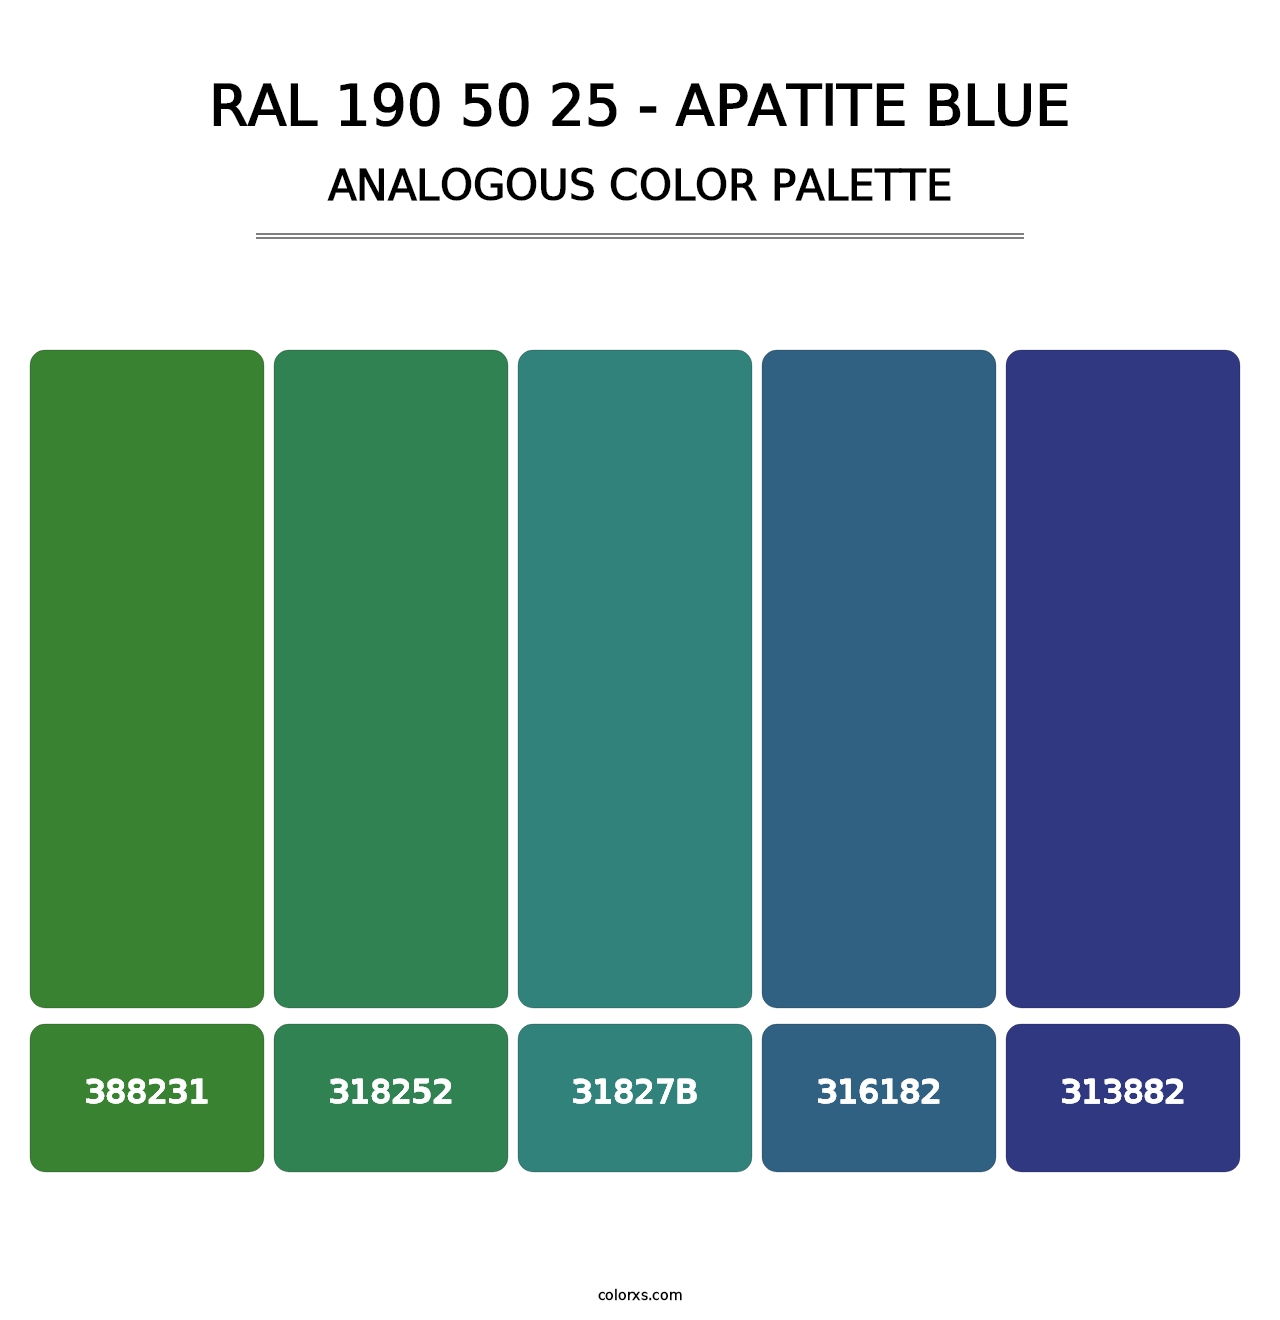 RAL 190 50 25 - Apatite Blue - Analogous Color Palette